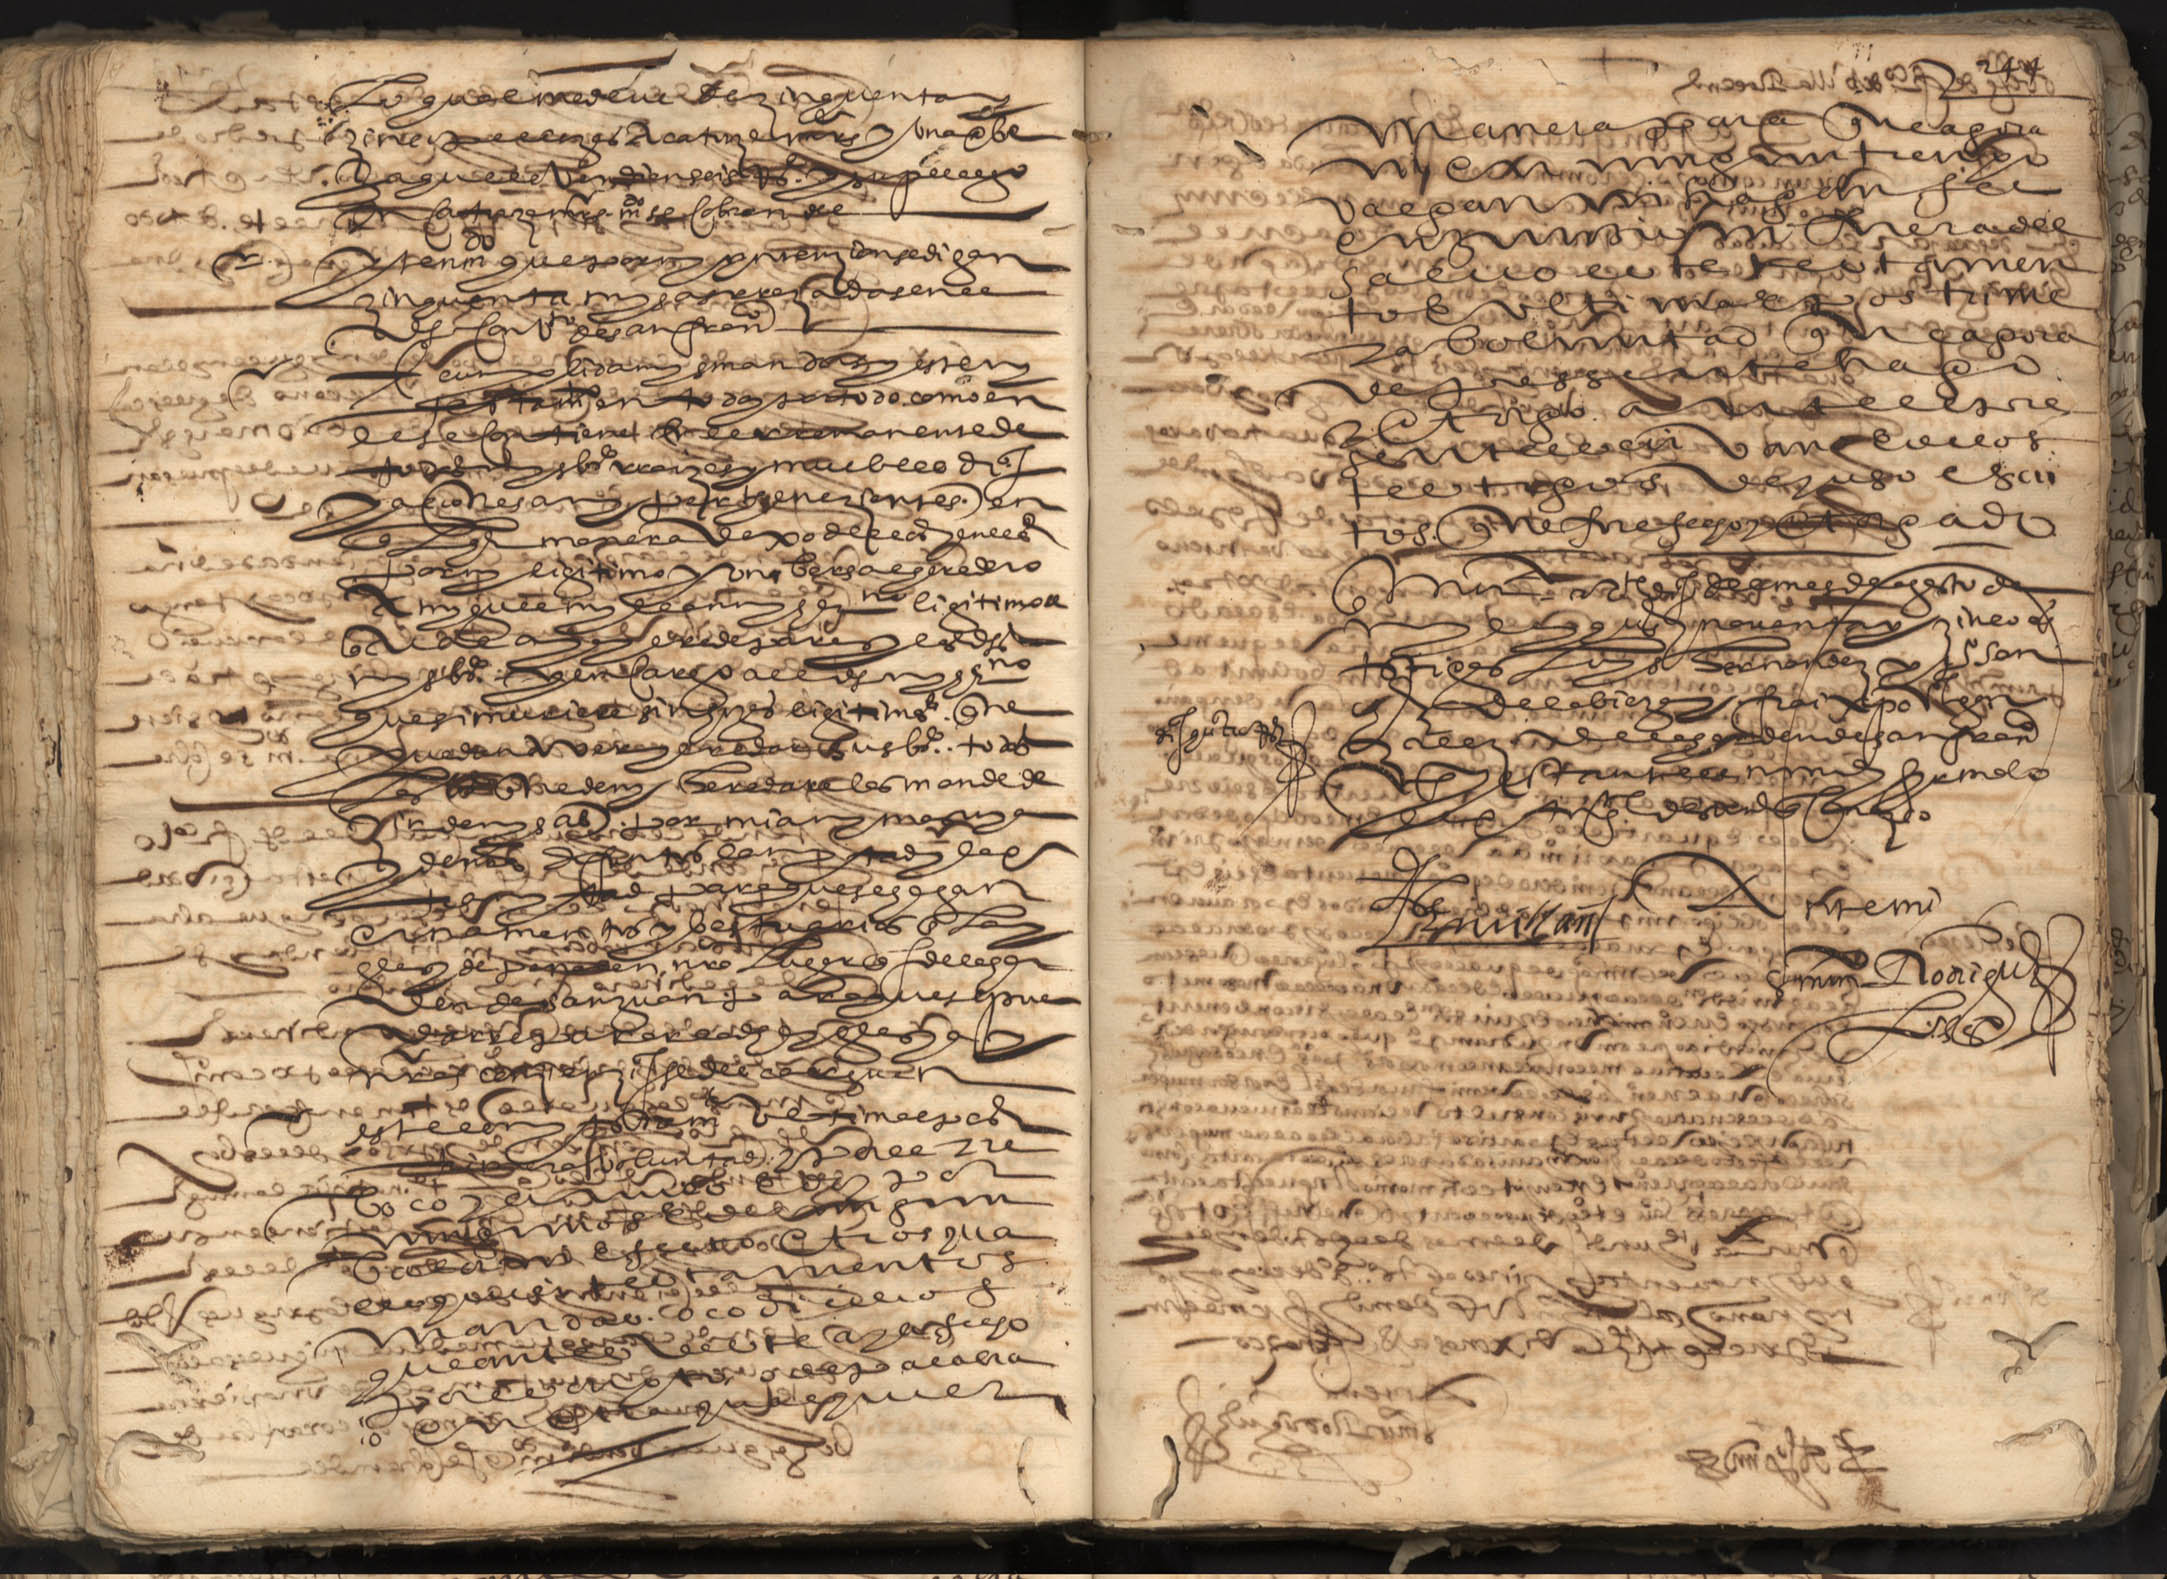 Registro de Martín Rodriguez Narváez, Murcia de 1595.